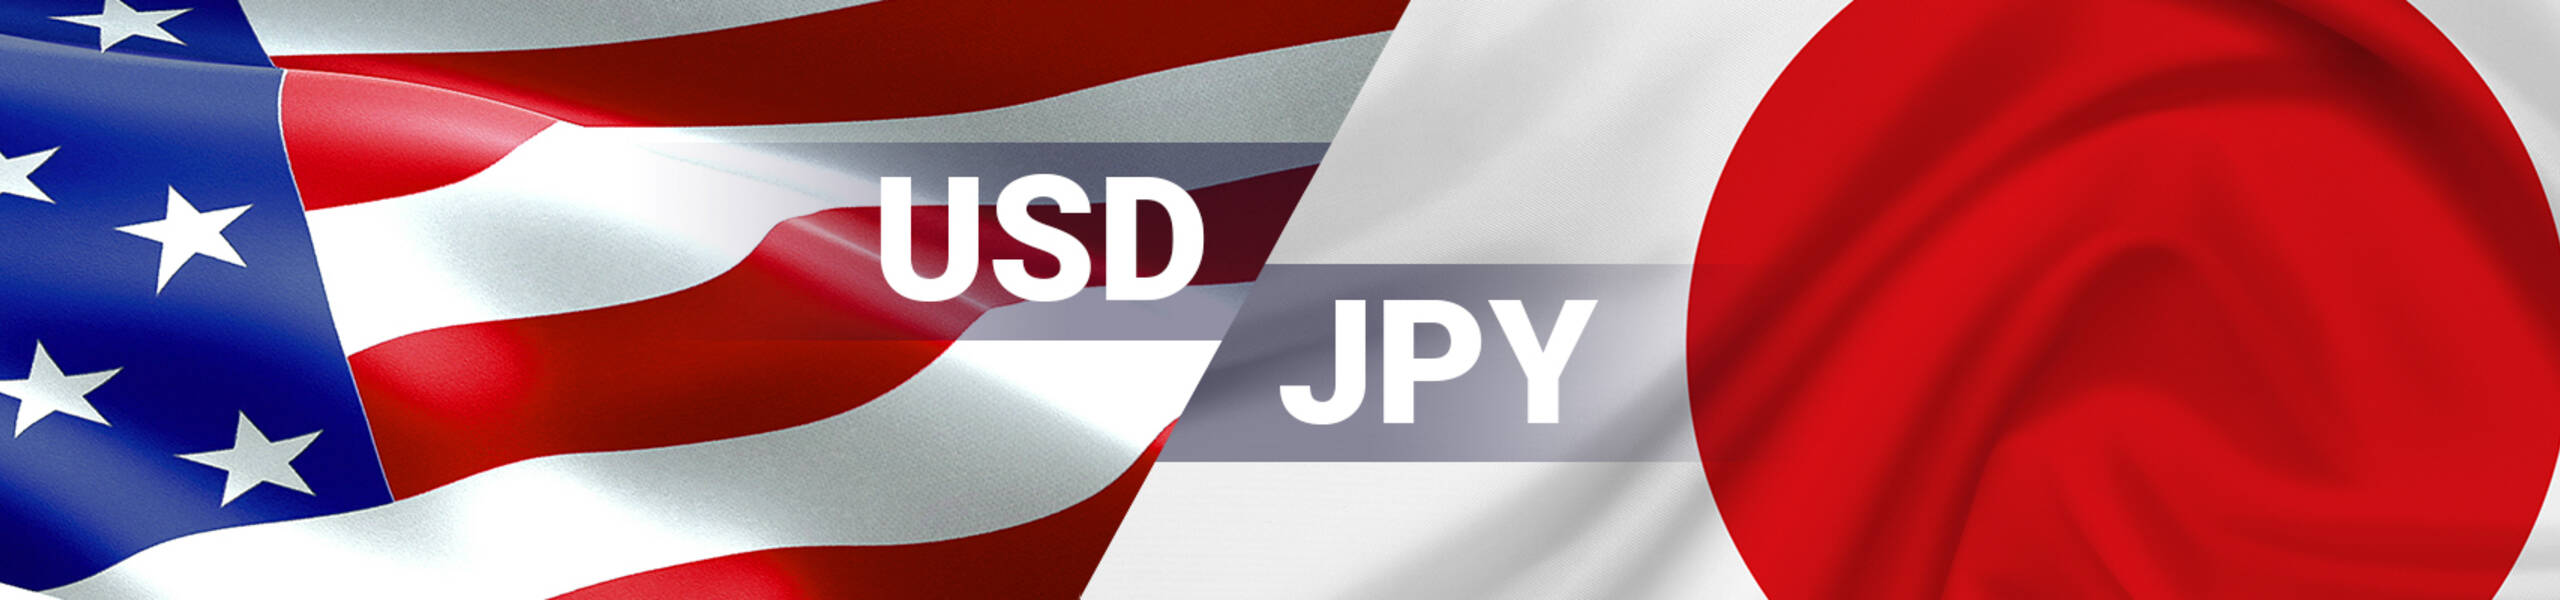 USD/JPY con resistencia sólida en 114.20